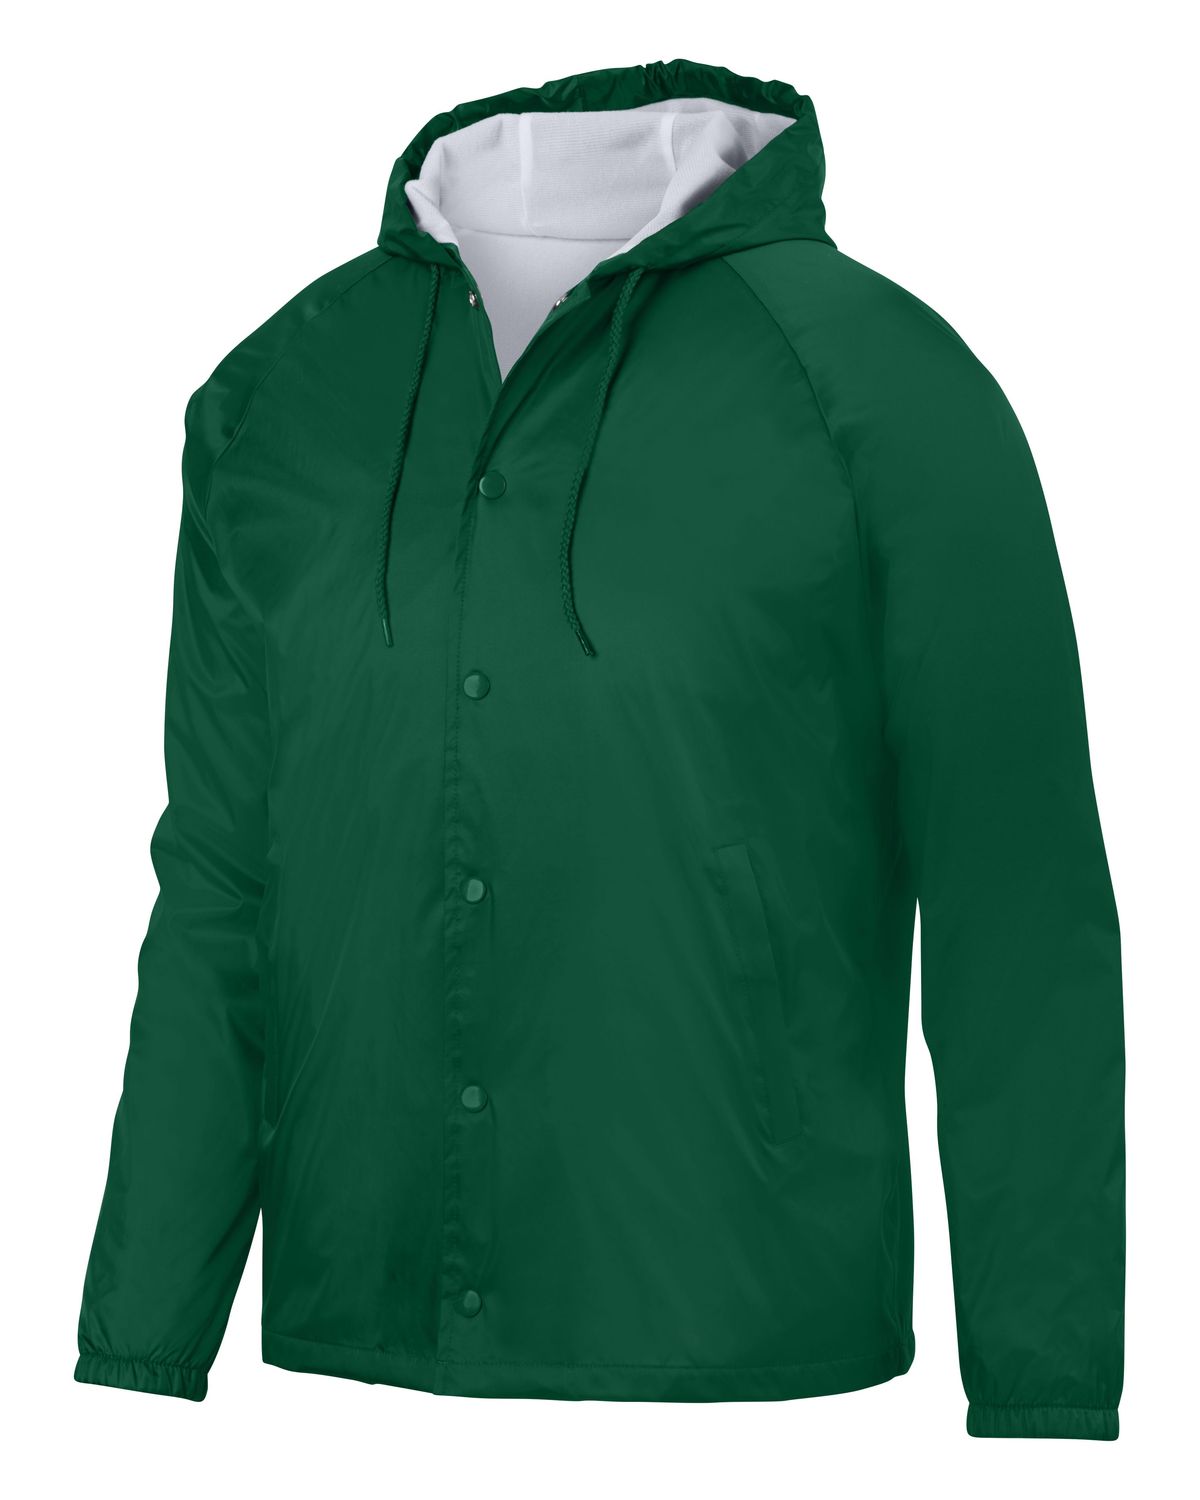 'Augusta Sportswear 3102 Hooded Coach'S Jacket'